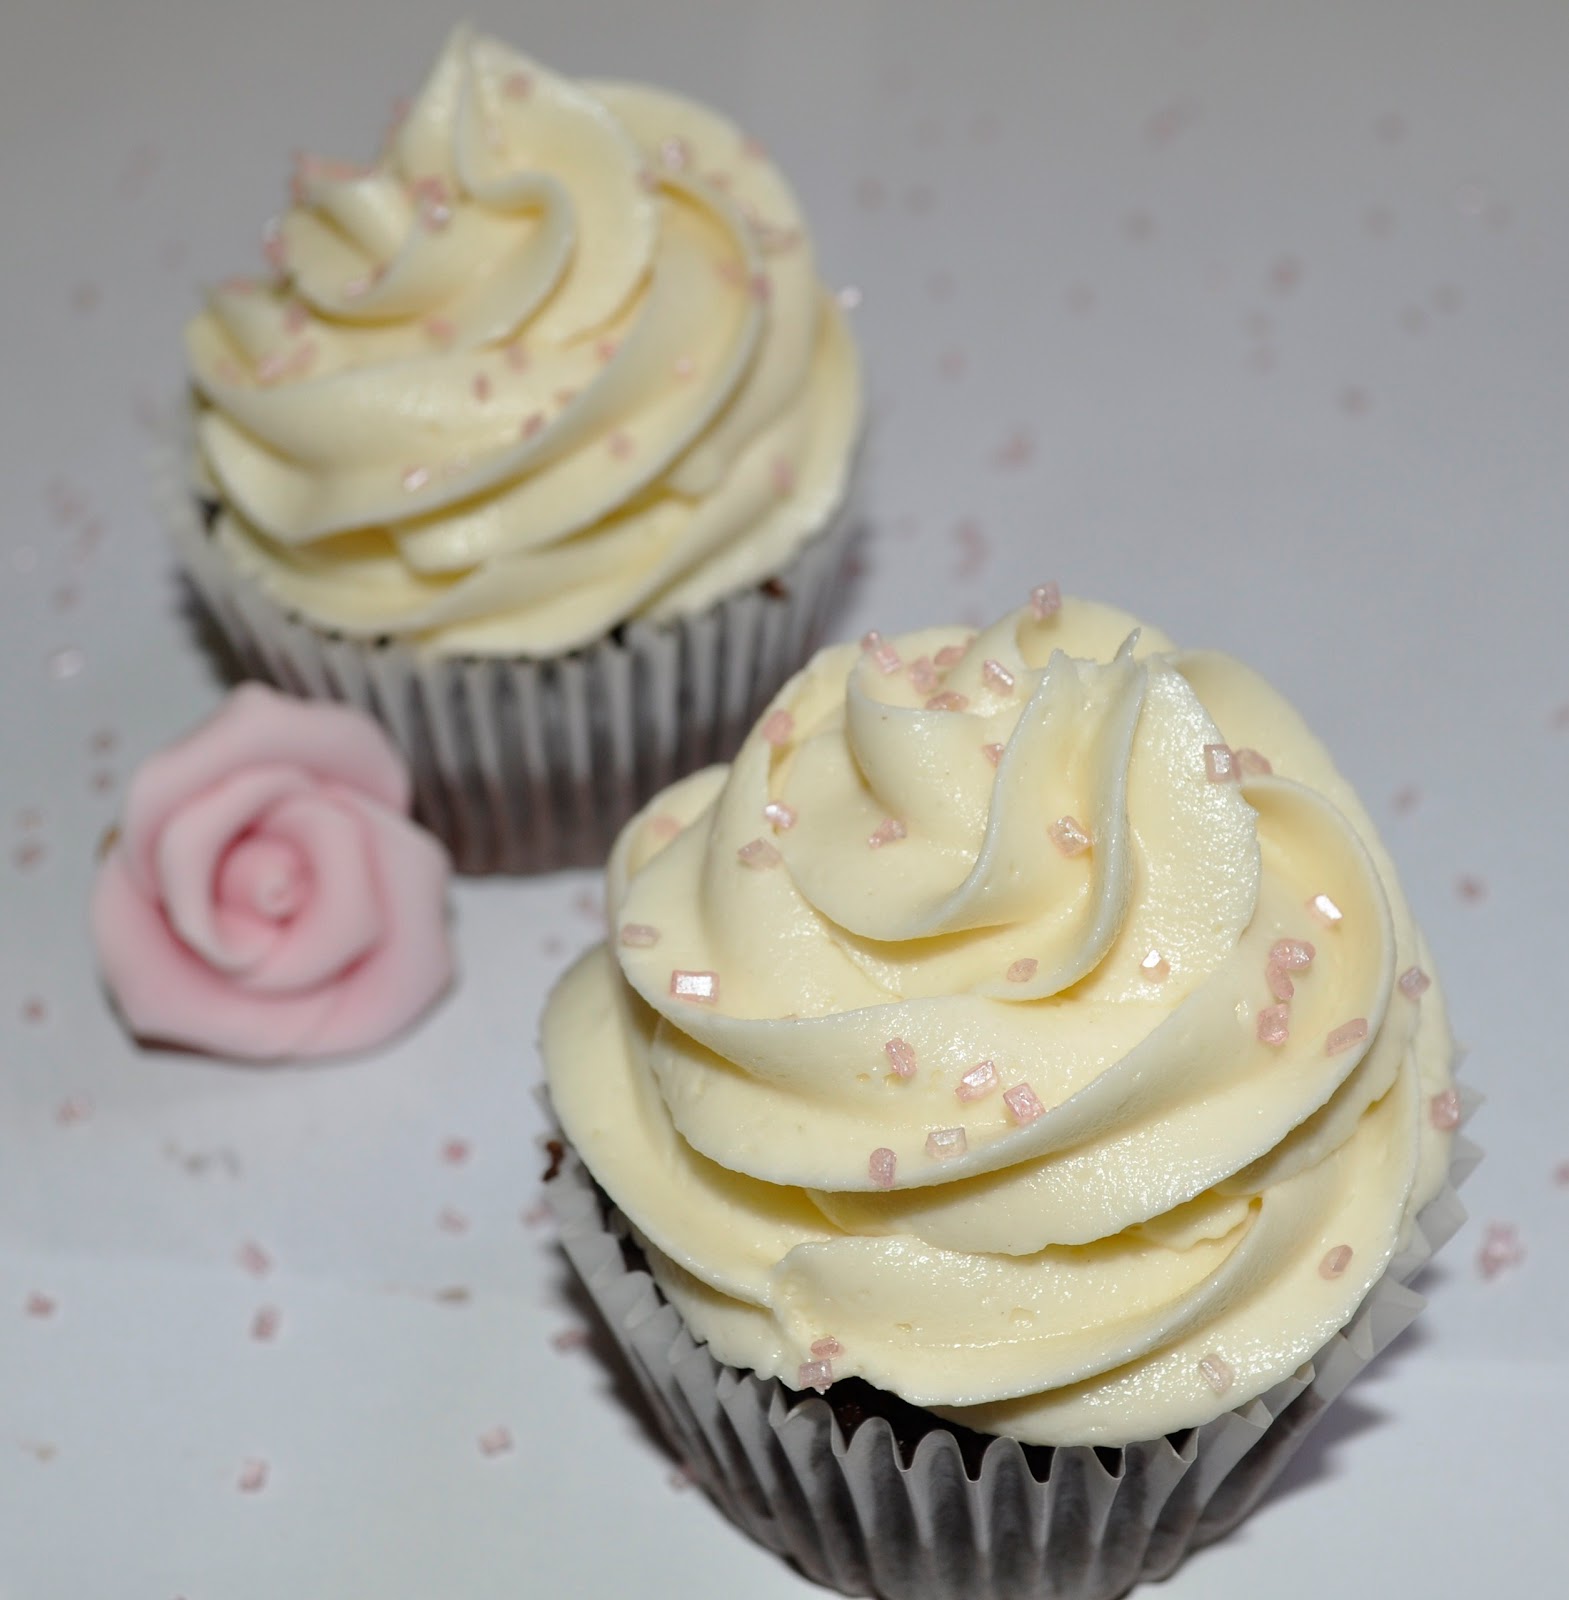 Belle cupcakes: Toc-toc..Cupcakes de chocolate y nocilla blancay SORTEO !!!!!!!